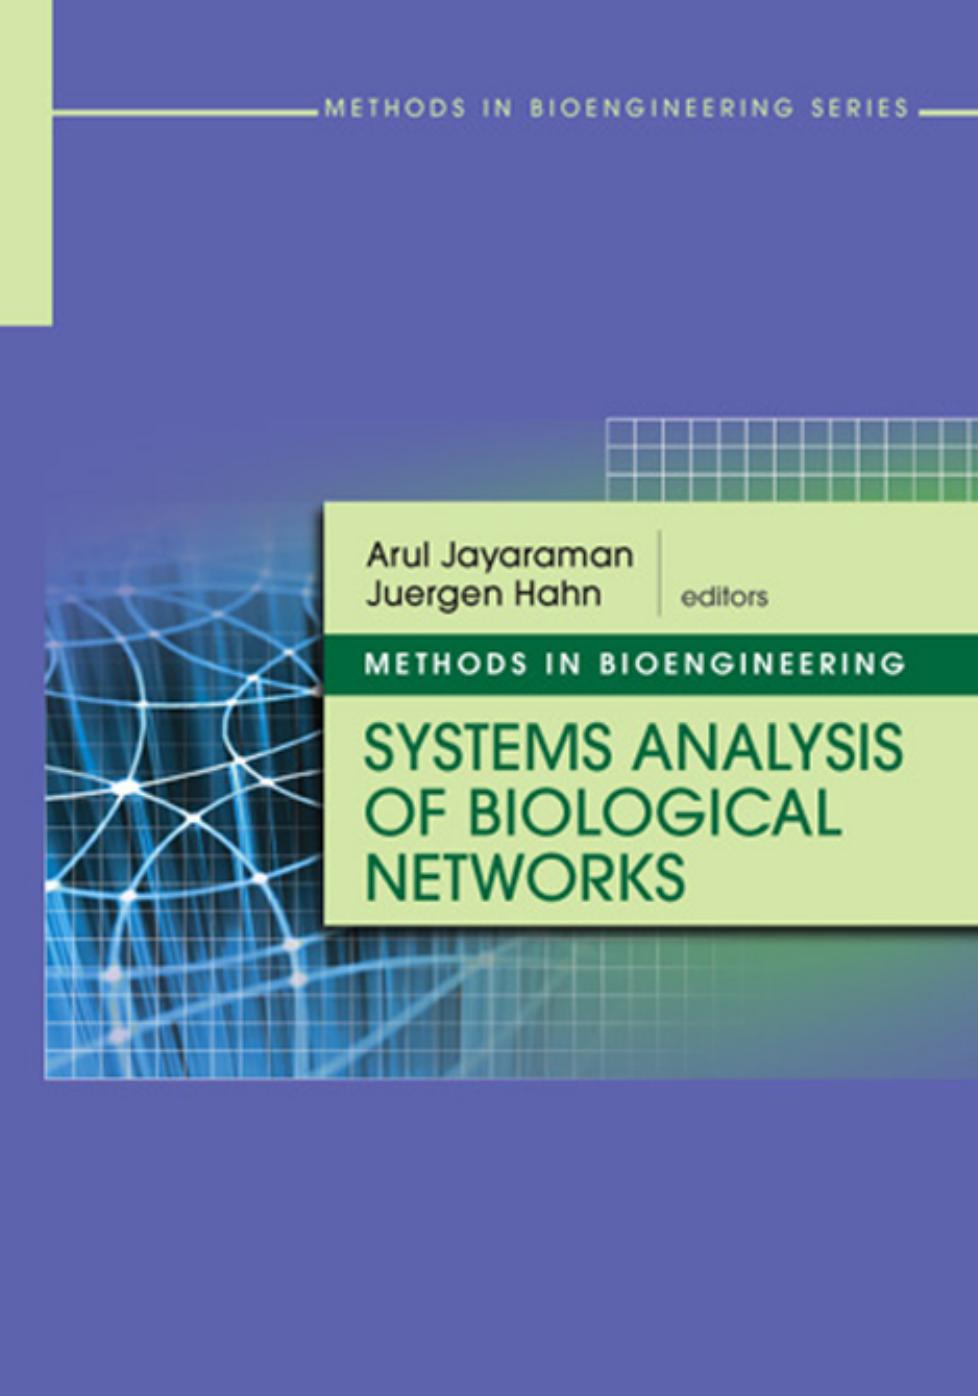 Methods in Bioengineering: Systems Analysis of Biological Networks (The Artech House Methods in Bioengineering)